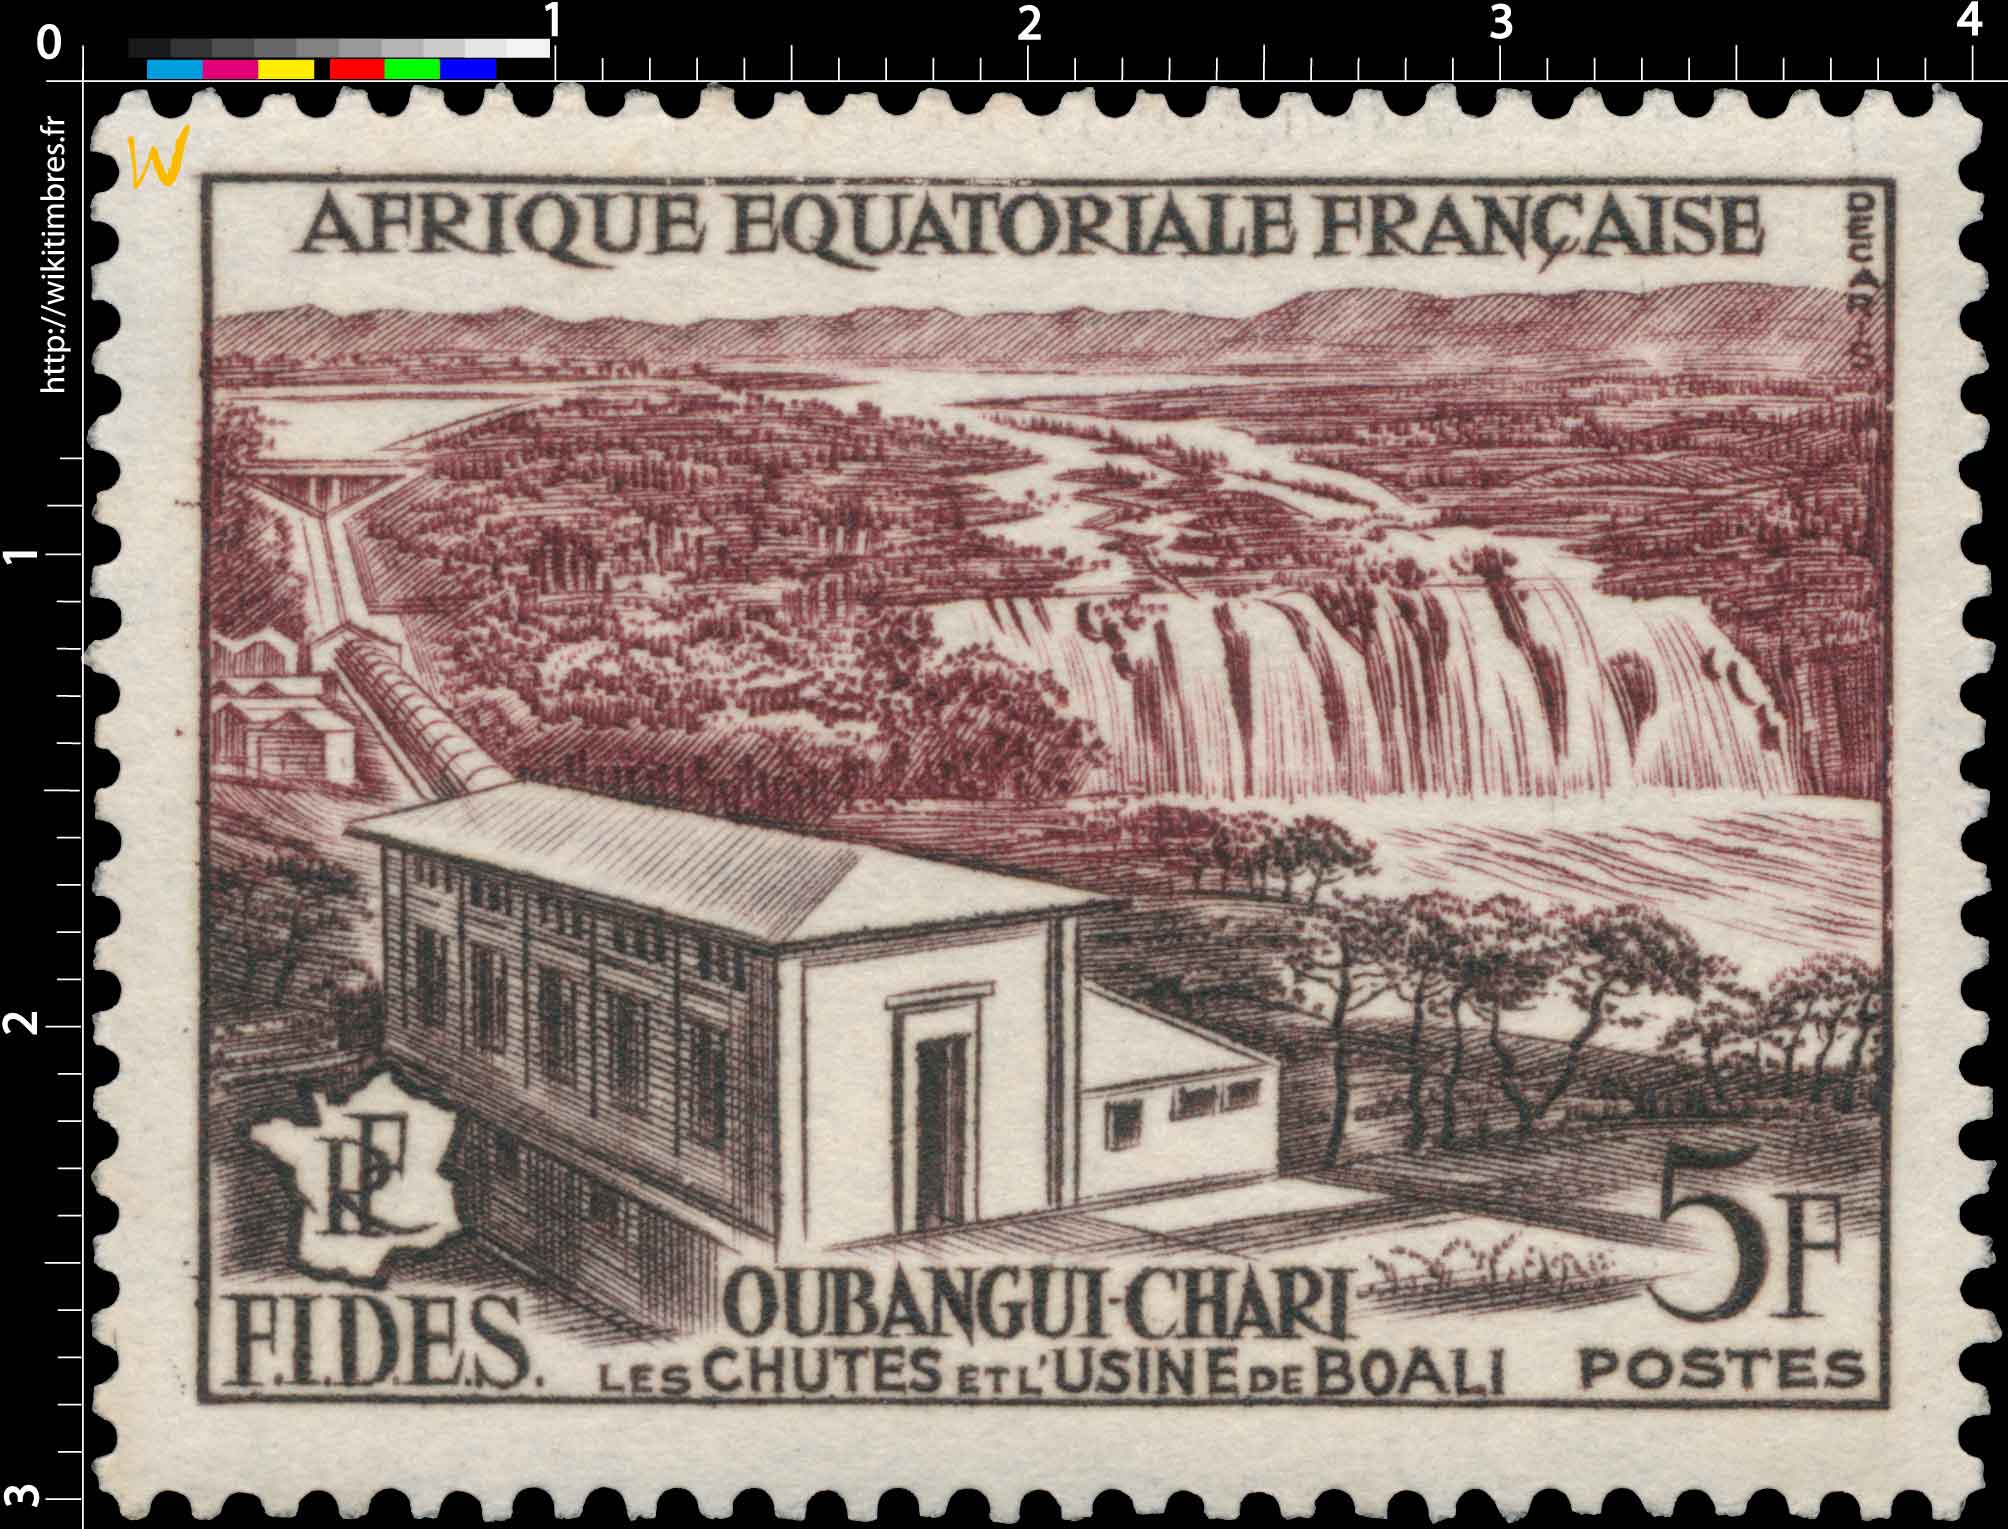 Oubangui-Chari les chutes de l usine de Boali F.I.D.S